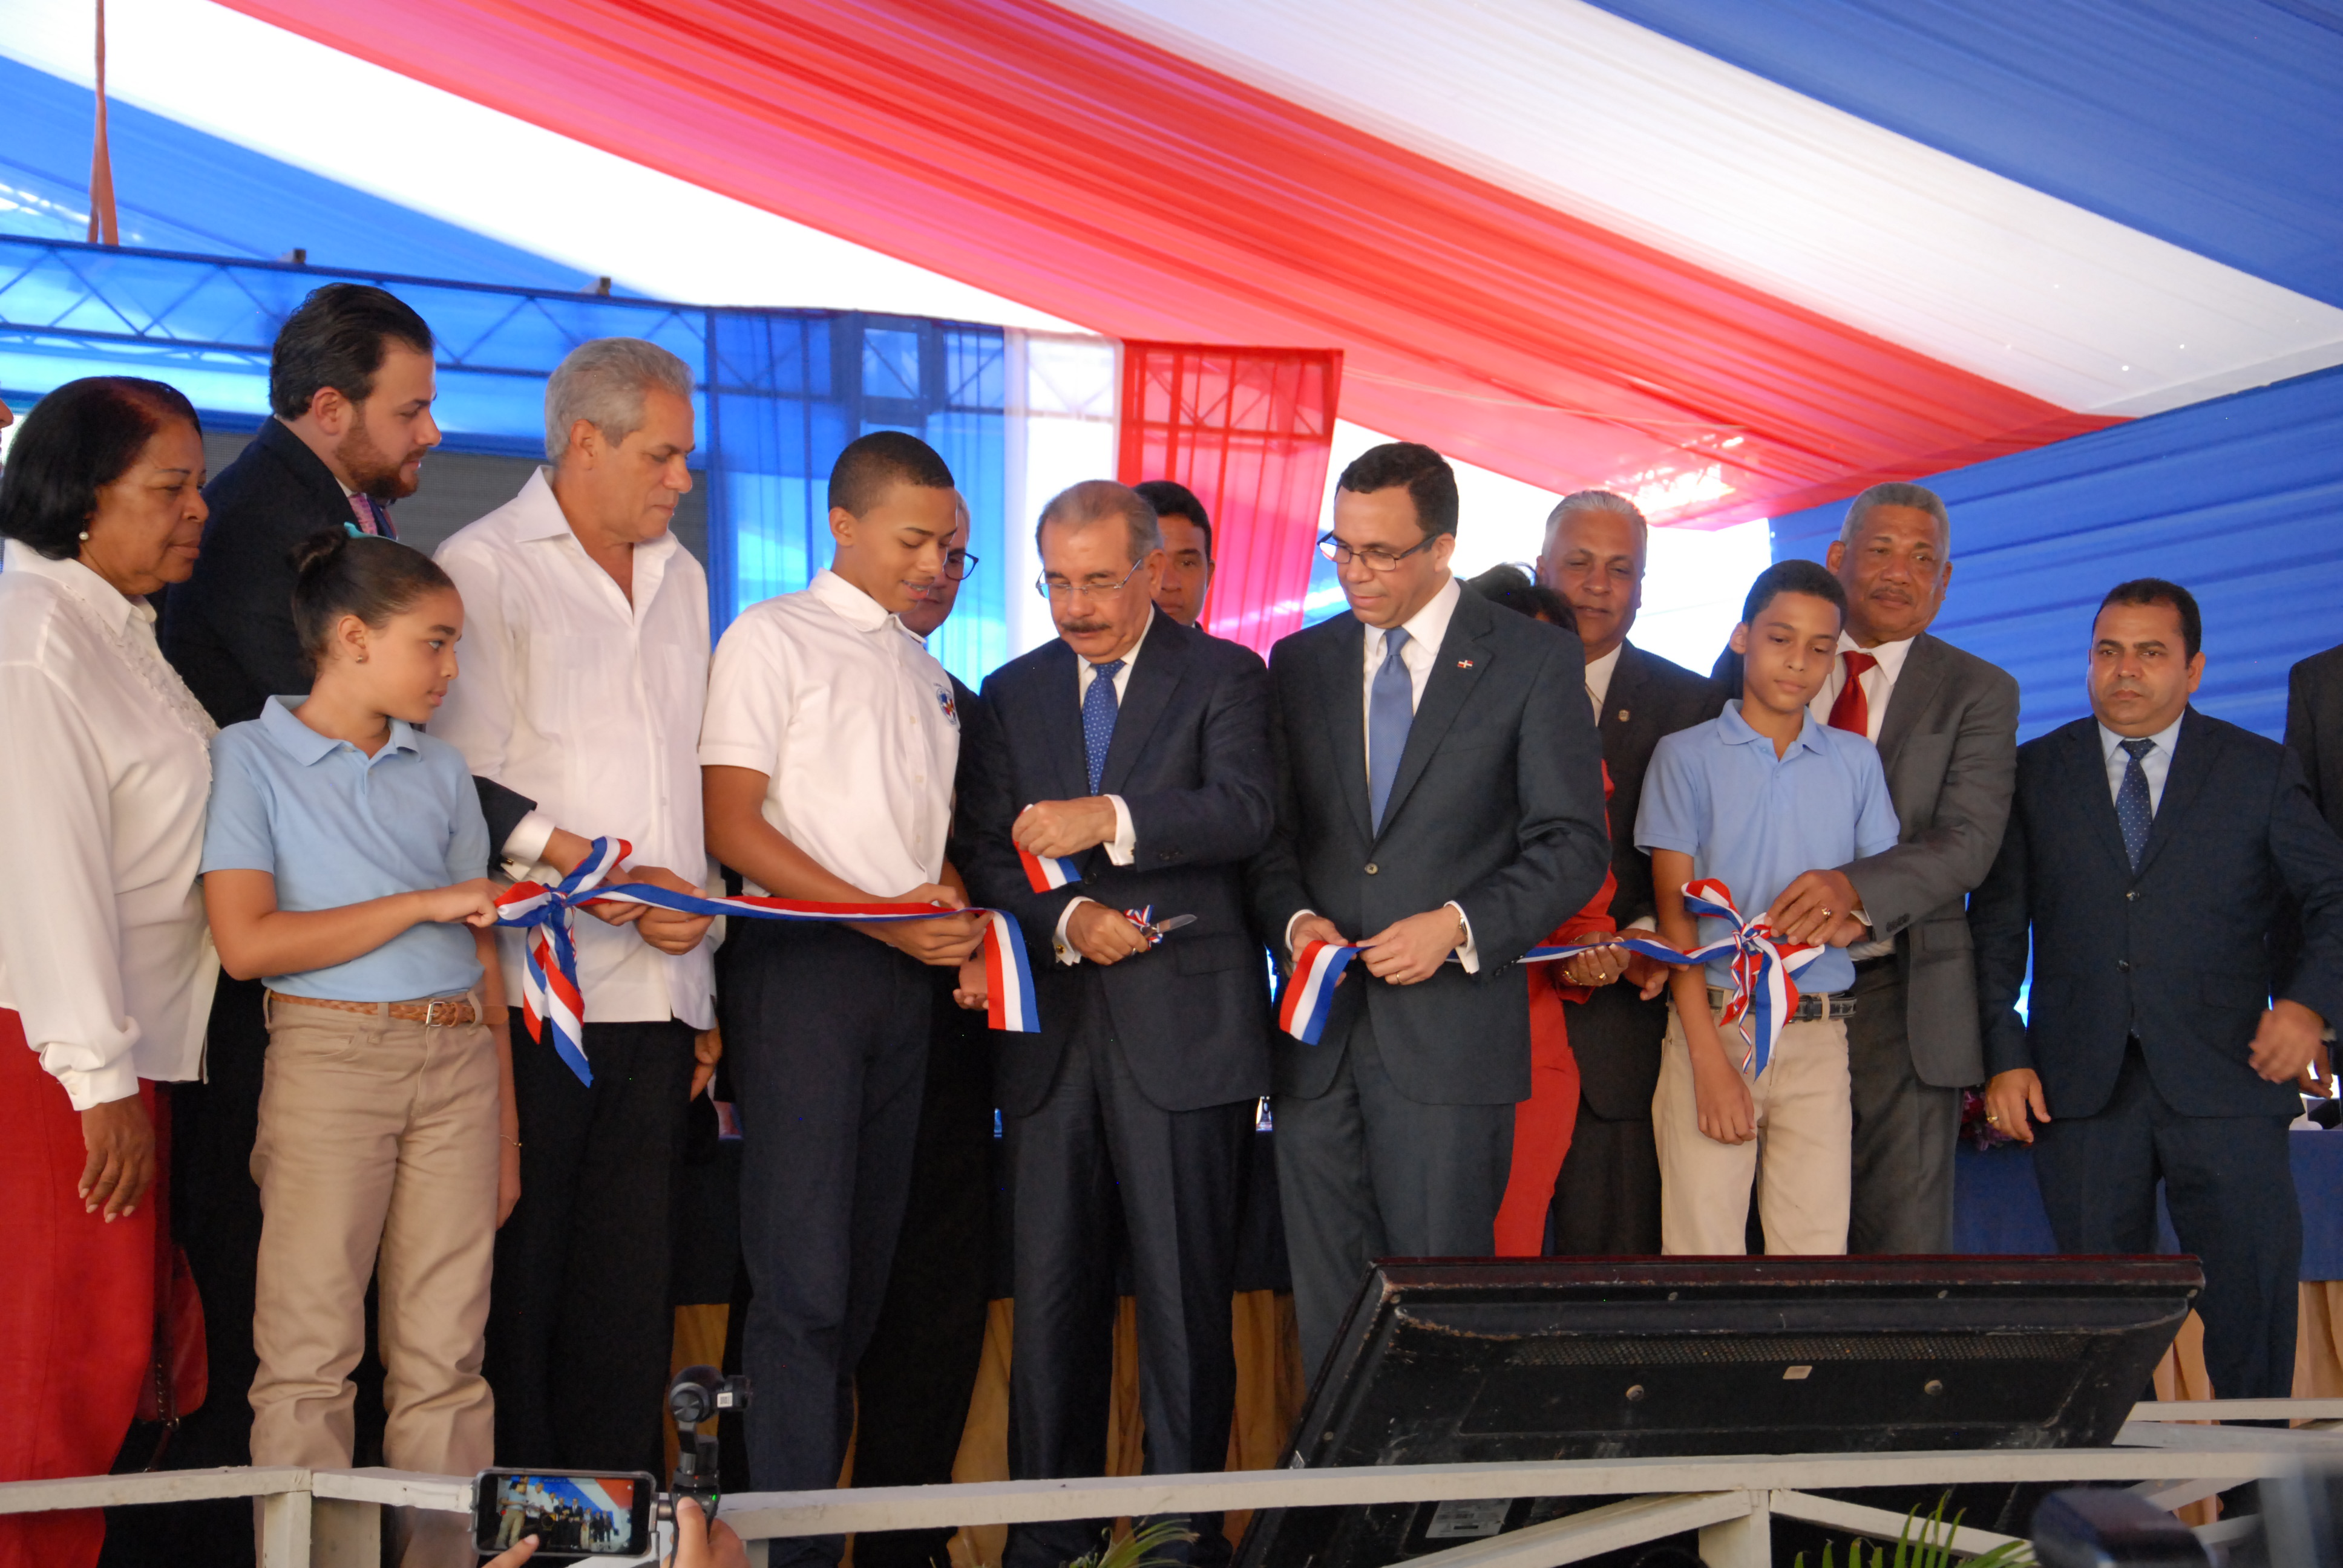  San José de Ocoa recibe un nuevo liceo técnico de manos del Presidente Danilo Medina